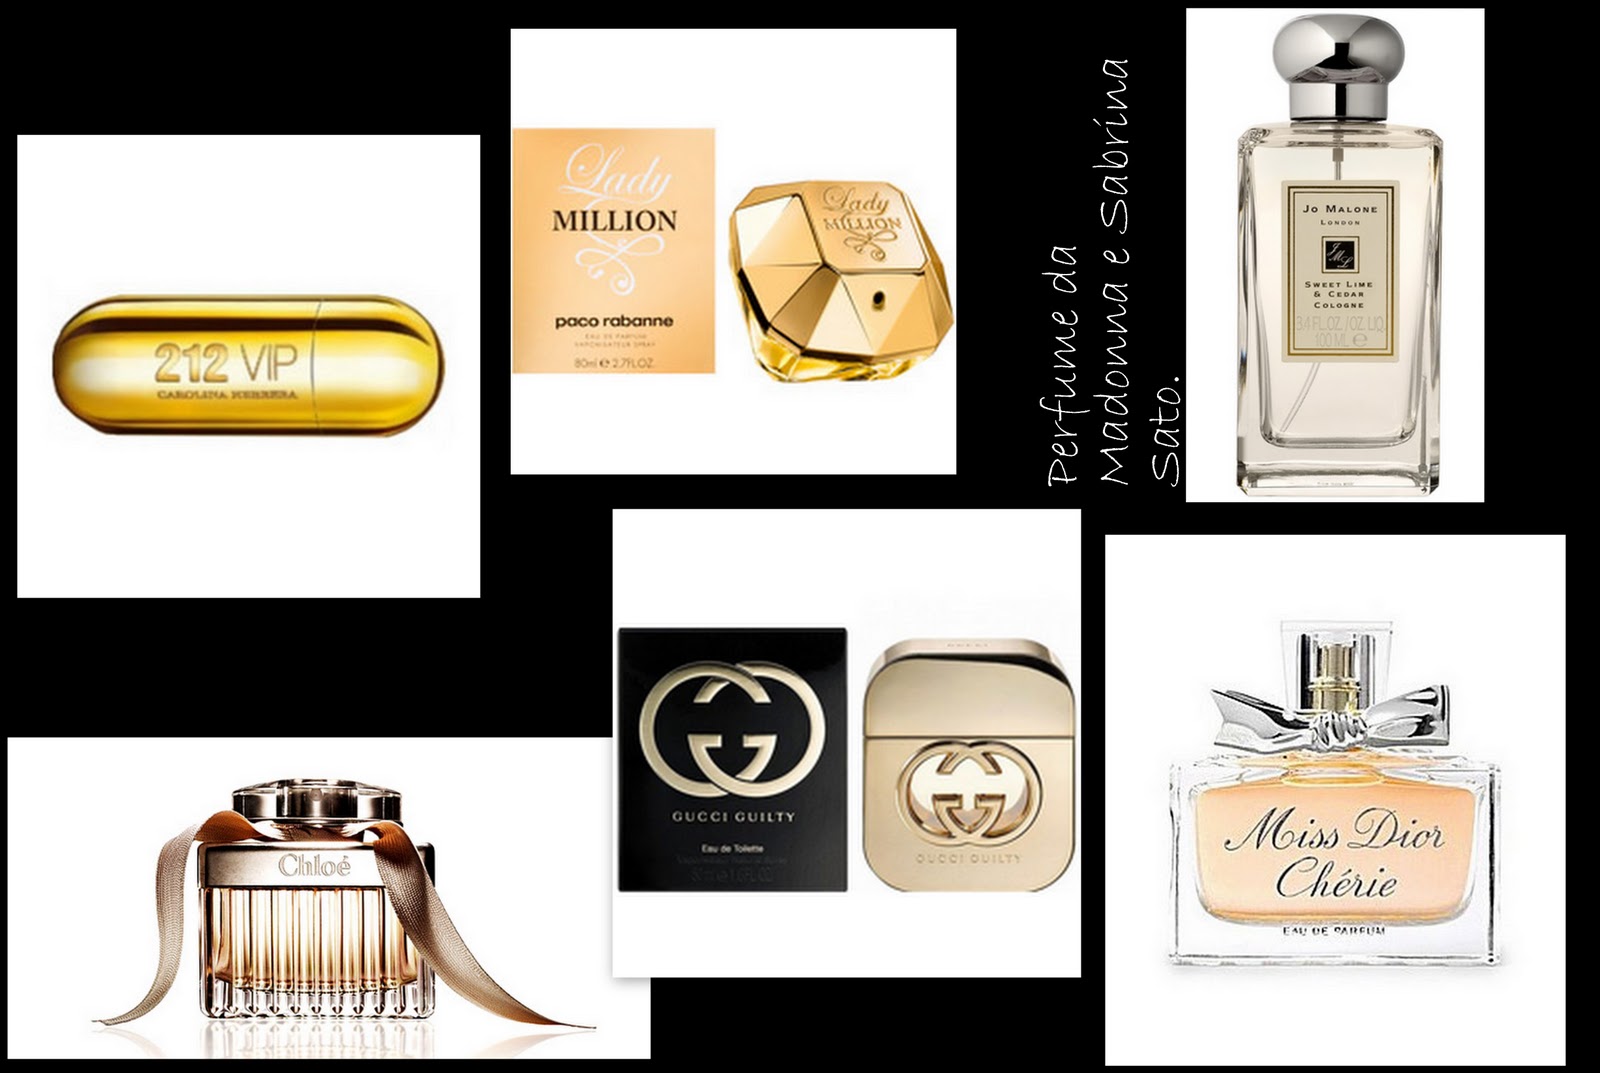 http://2.bp.blogspot.com/_G1bjOzhccQw/TPzQov9rzGI/AAAAAAAABNo/SJ0Wj9W7RfI/s1600/montagem+perfume.jpg